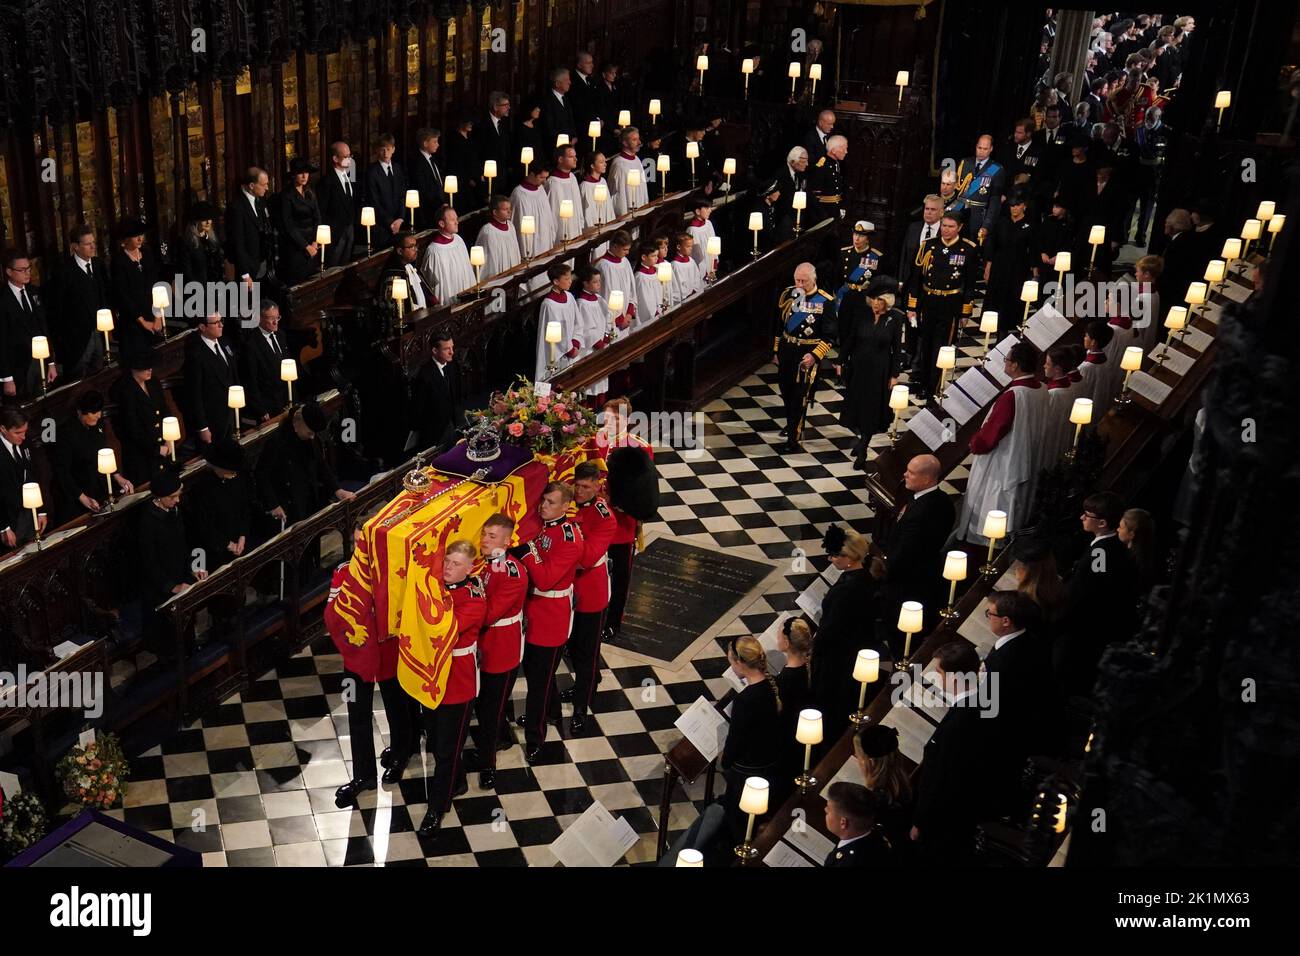 La bara della regina Elisabetta II, seguita da (da sinistra a destra, di fronte) re Carlo III, la regina Consorte, la principessa reale, vice ammiraglio Sir Tim Laurence, il duca di York, il conte di Wessex, la contessa di Wessex, il principe di Galles, il principe Giorgio, la principessa Charlotte, La principessa di Galles, il Duca di Sussex, la Duchessa di Sussex, Peter Phillips, il Conte di Snowdon, il Duca di Gloucester, il Duca di Kent, e il Principe Michael di Kent, è portata dal Partito portatore al Commital Service nella Cappella di San Giorgio nel Castello di Windsor, Berkshire. Data immagine: Lunedì 19 settembre 2 Foto Stock